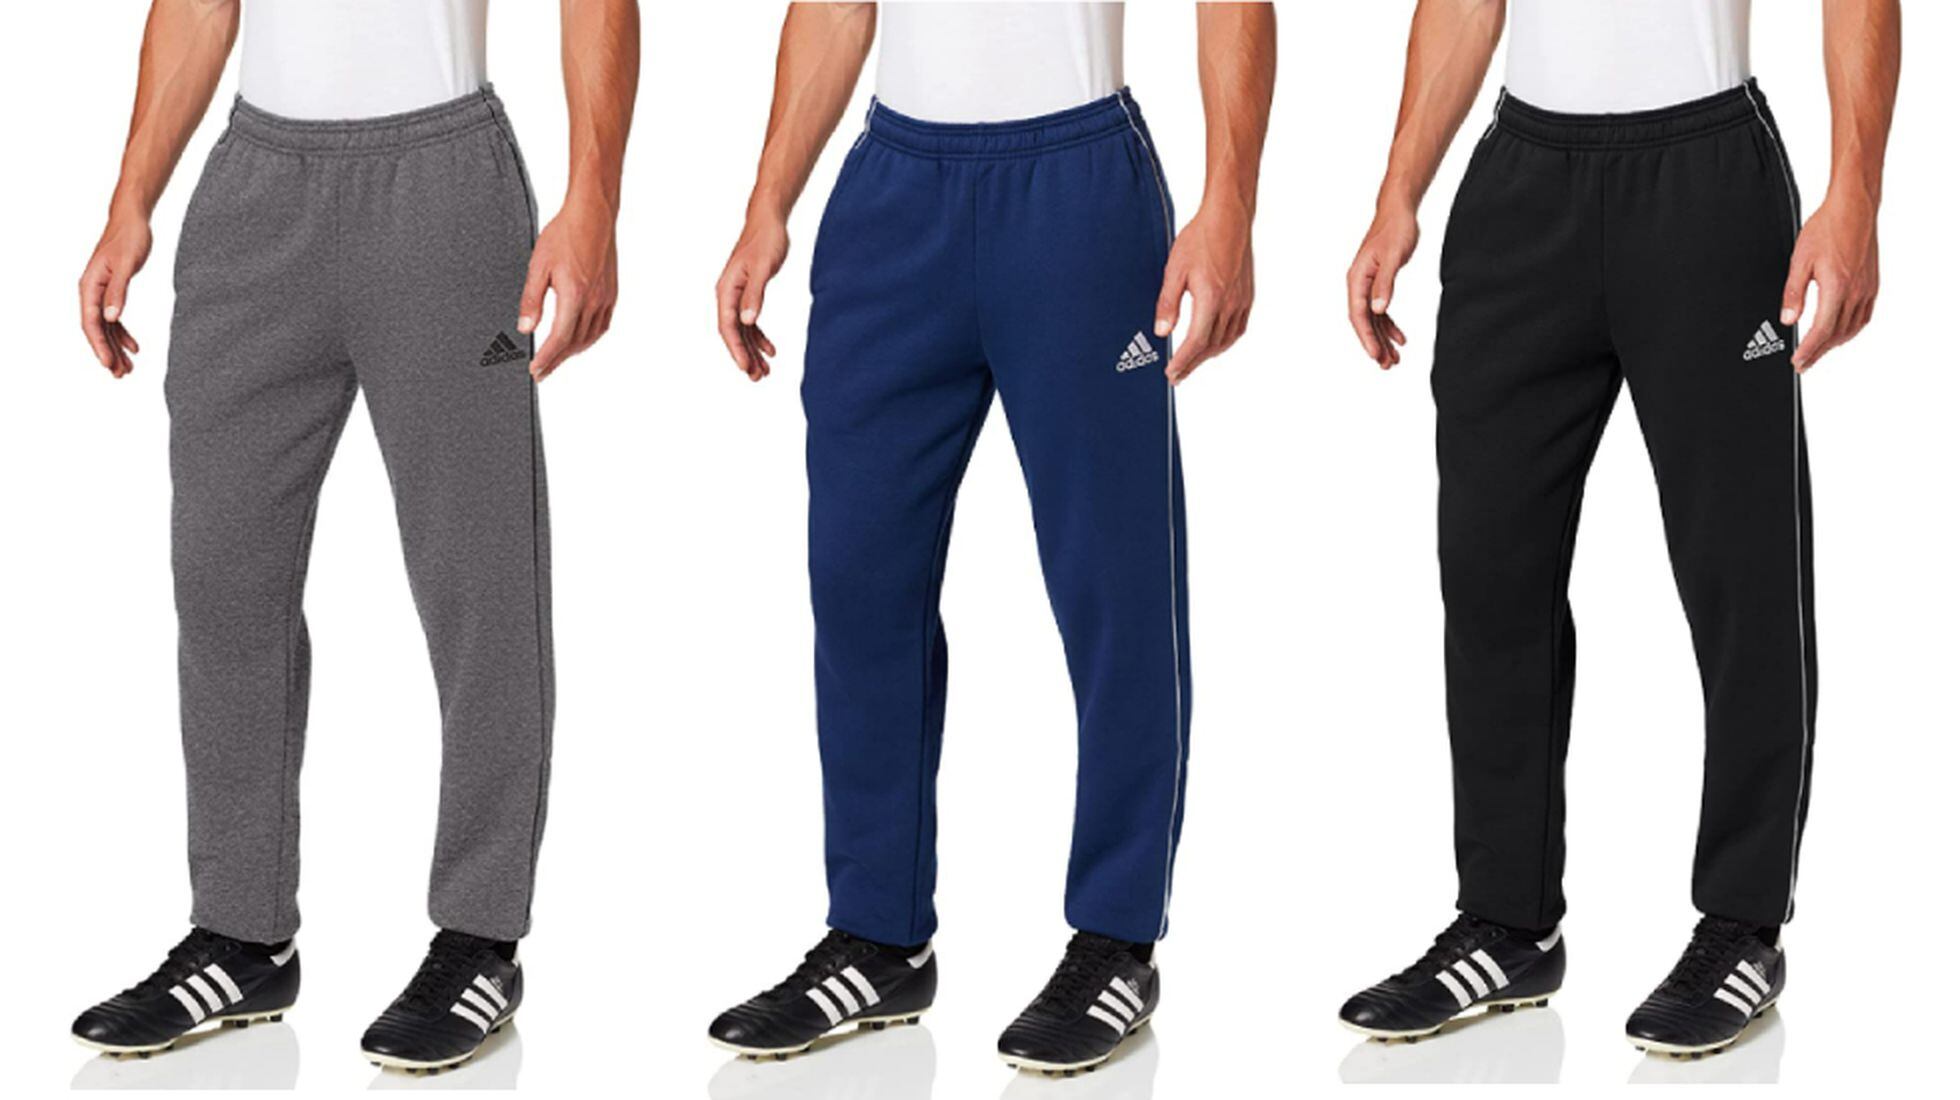 Pantalones deportivos hombre - compra online a los mejores precios